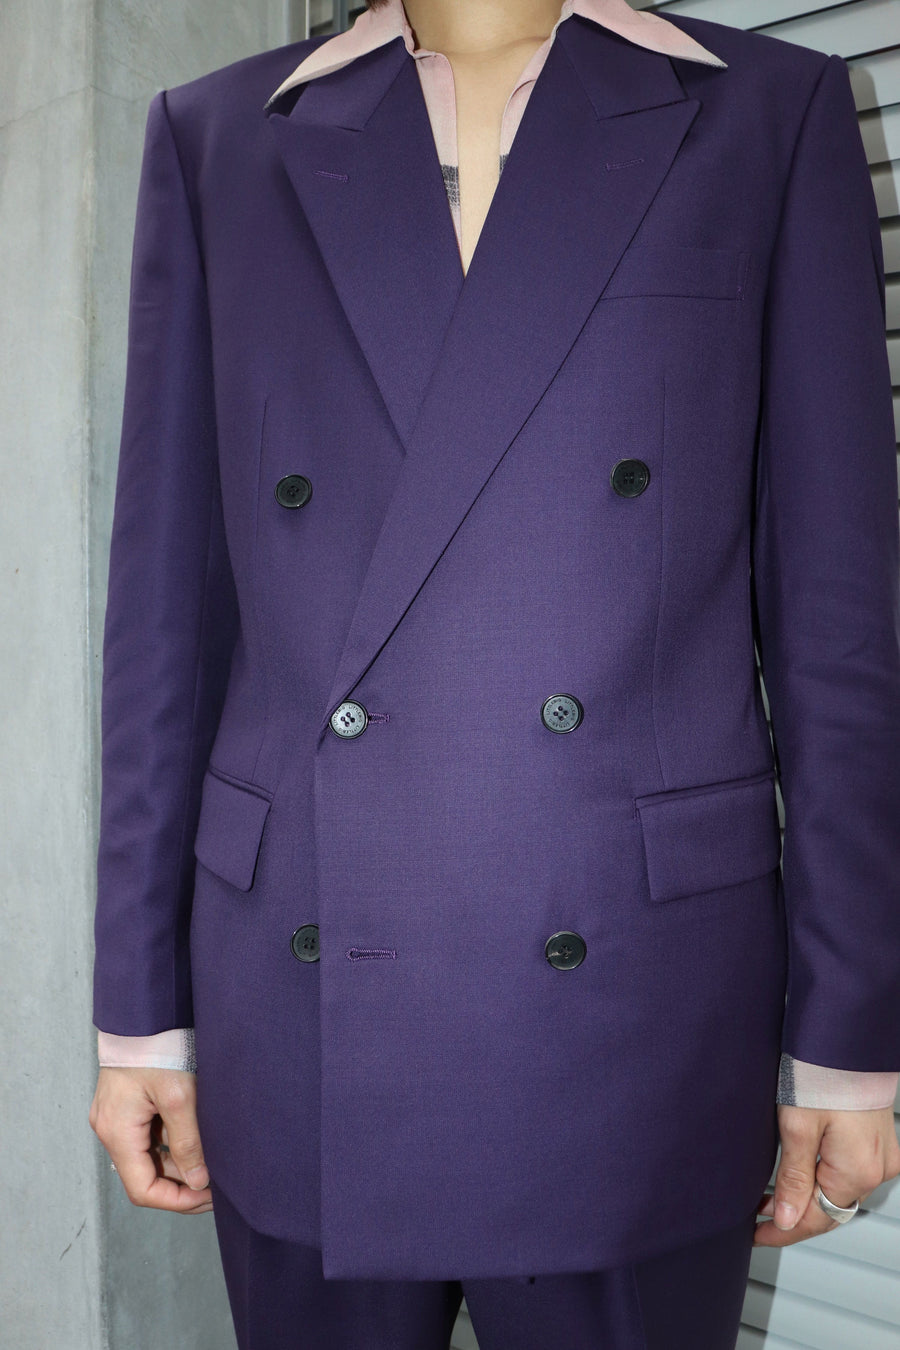 LITTLEBIG  Purple Double Jacket